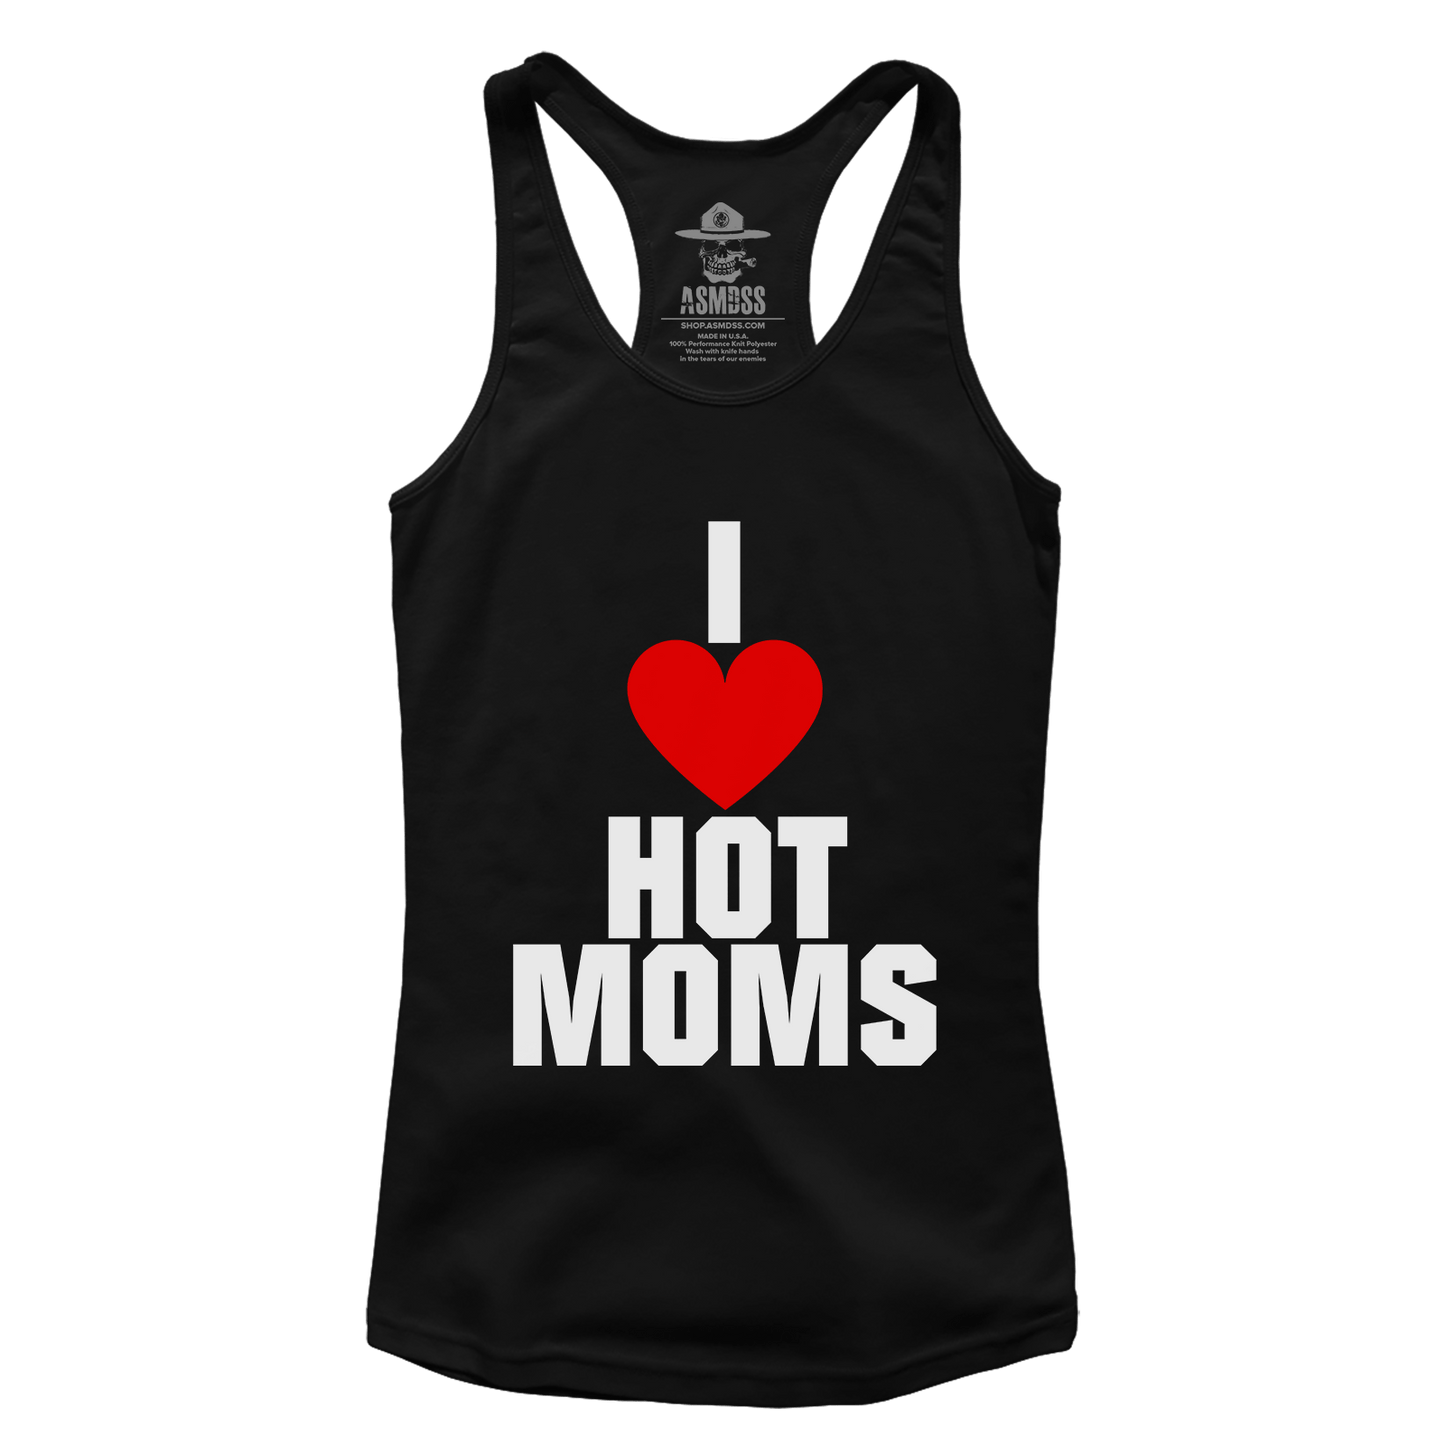 I Love Hot Moms (Ladies)